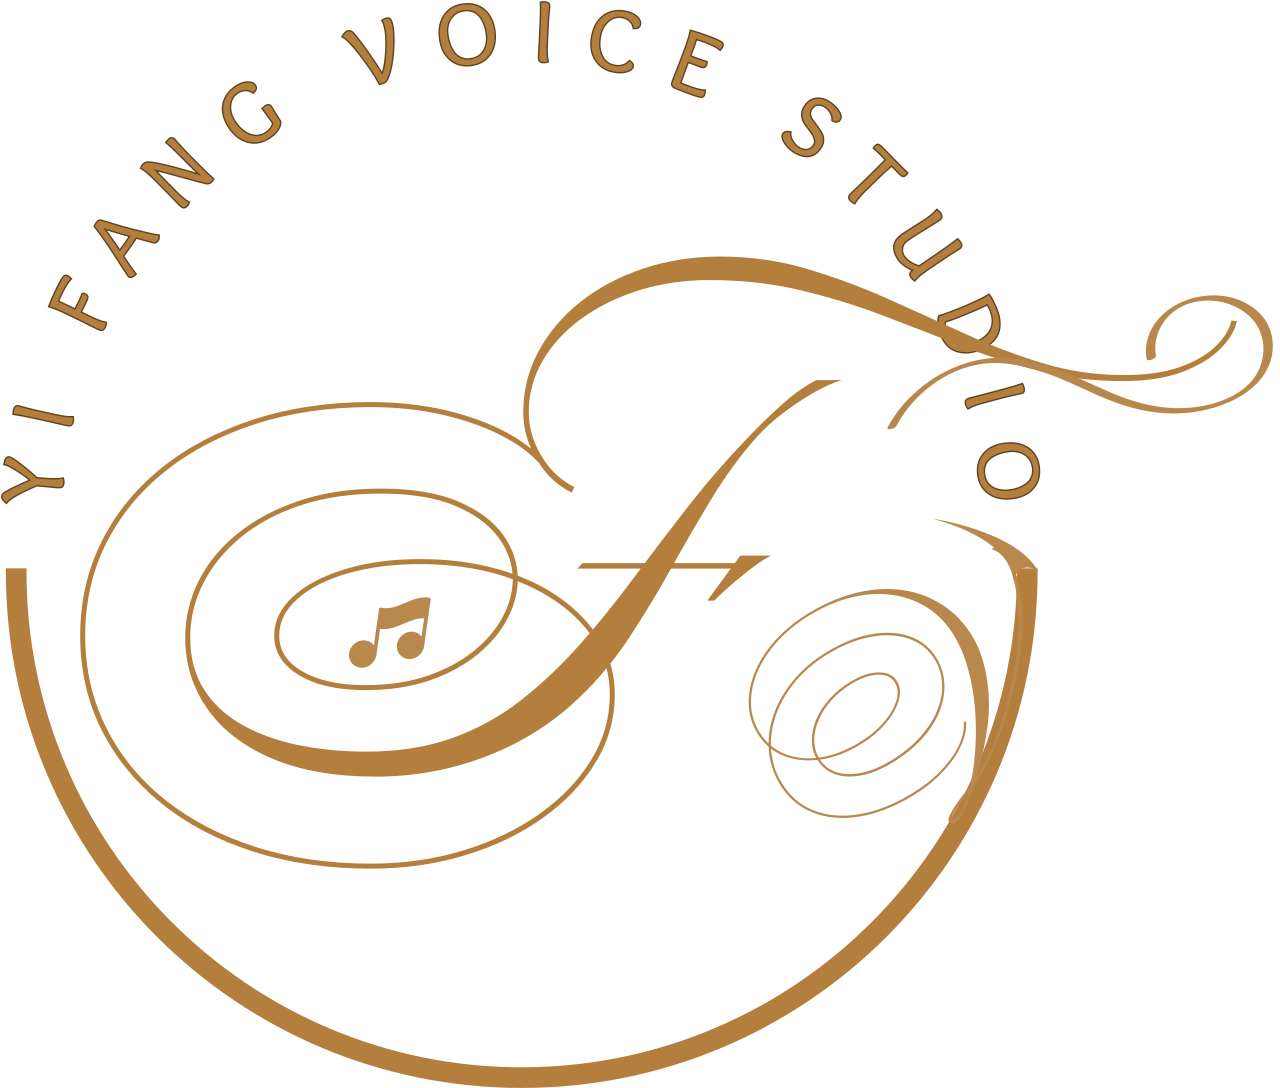 YI FANG VOICE STUDIO's logo